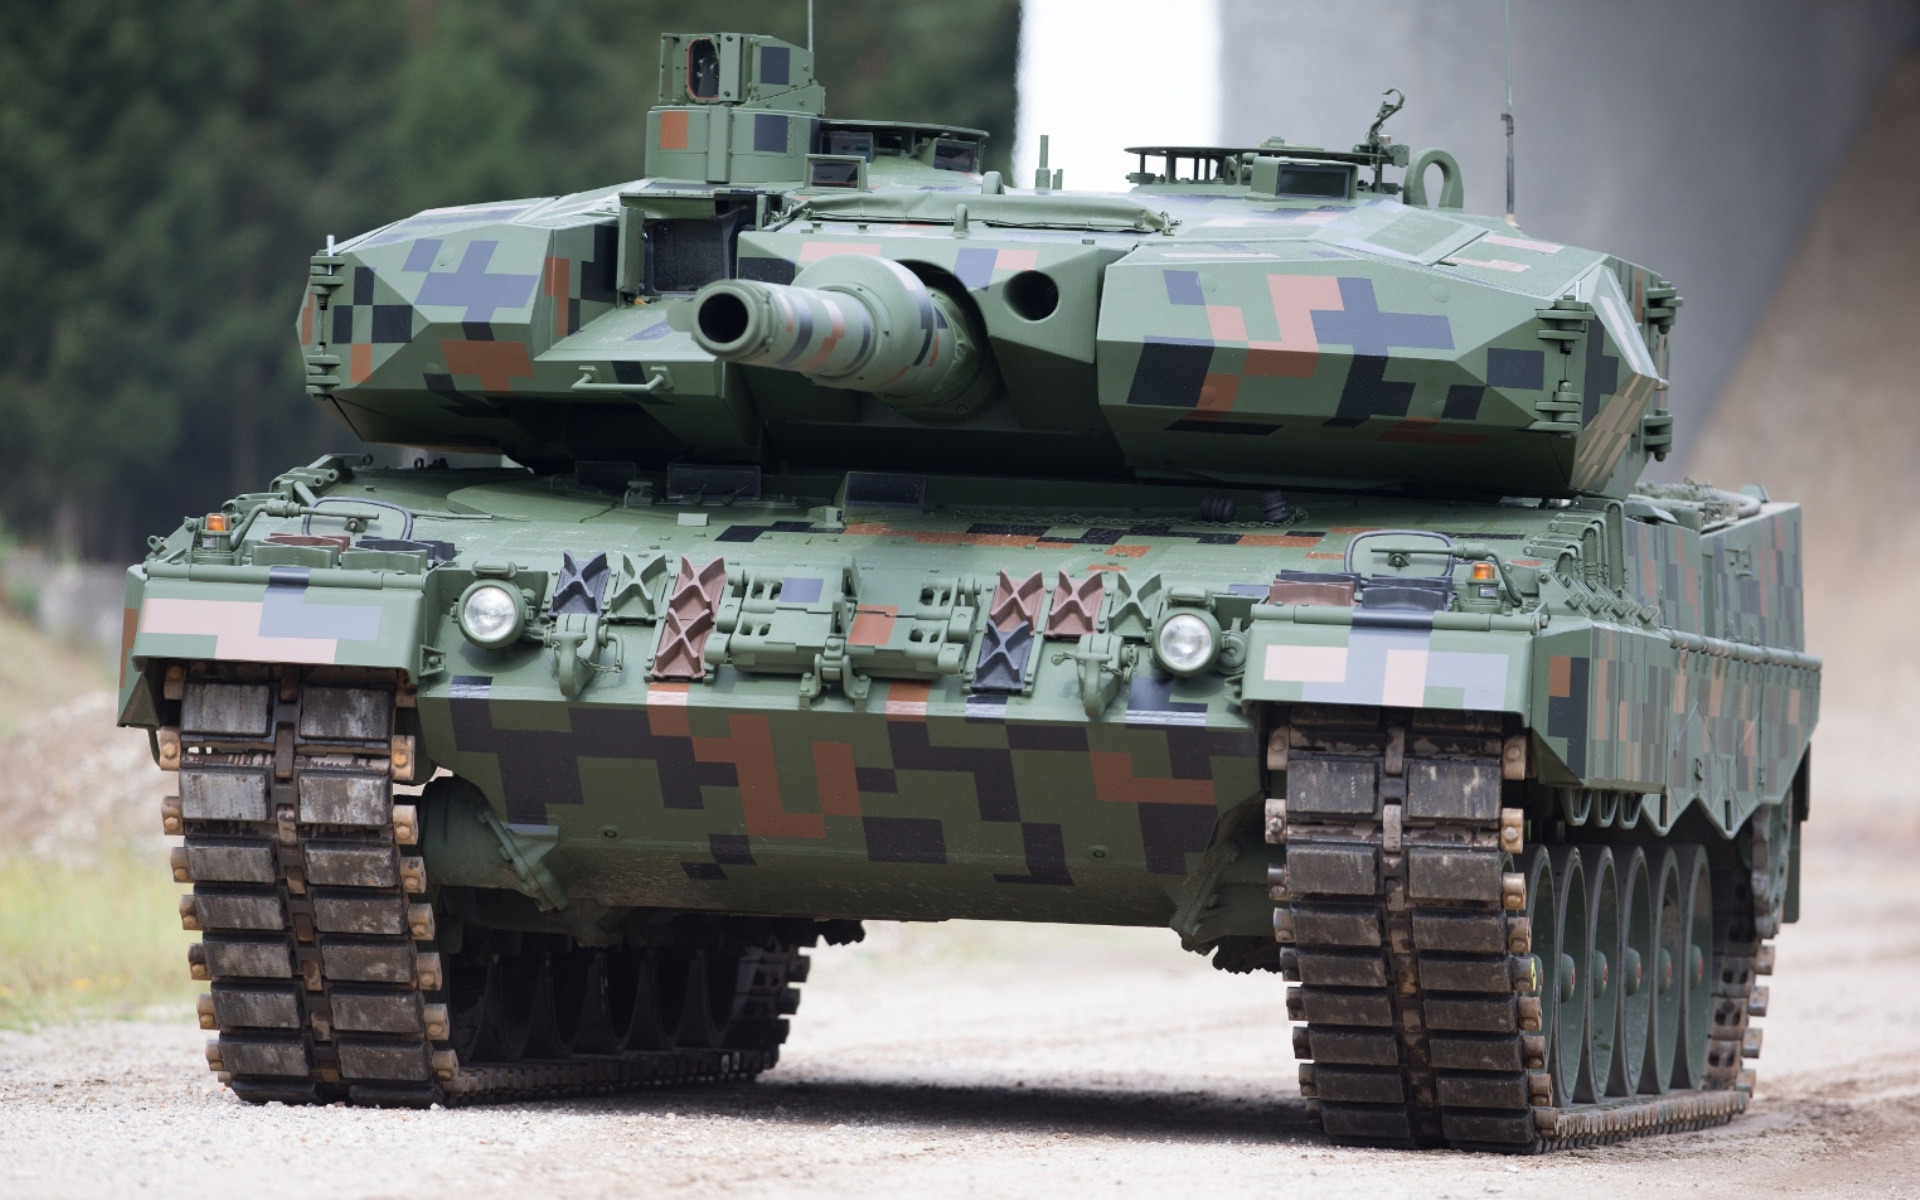 Leopardo de 2PL, alemán principal tanque de batalla, los modernos tanques, el Ejército alemán, alemán vehículos blindados, tanques, Alemania, Bundeswehr